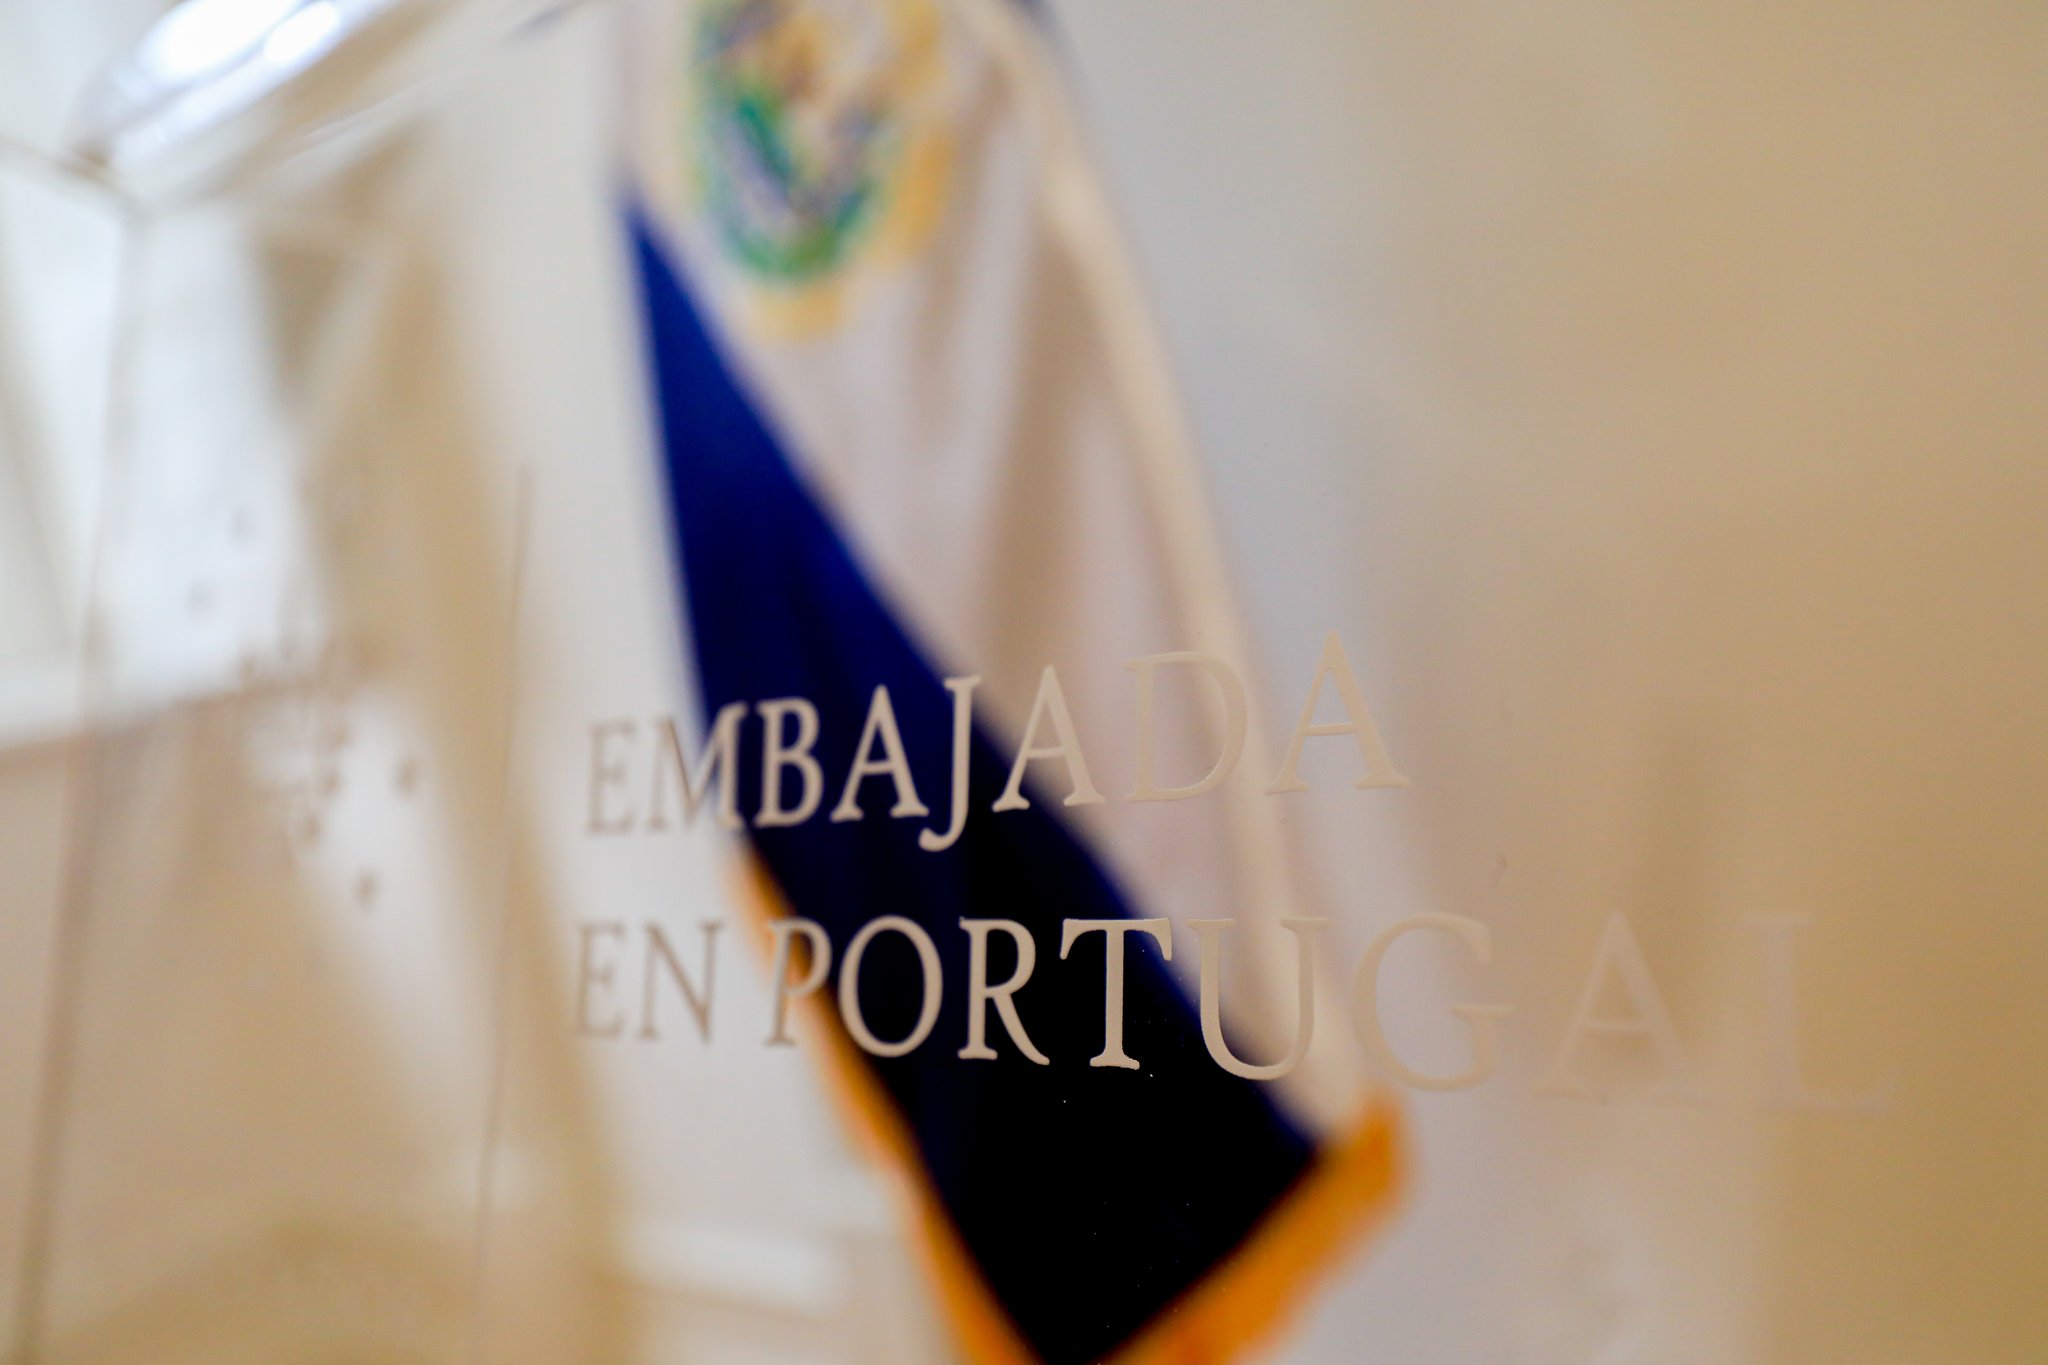 el-salvador-inaugura-embajada-en-portugal